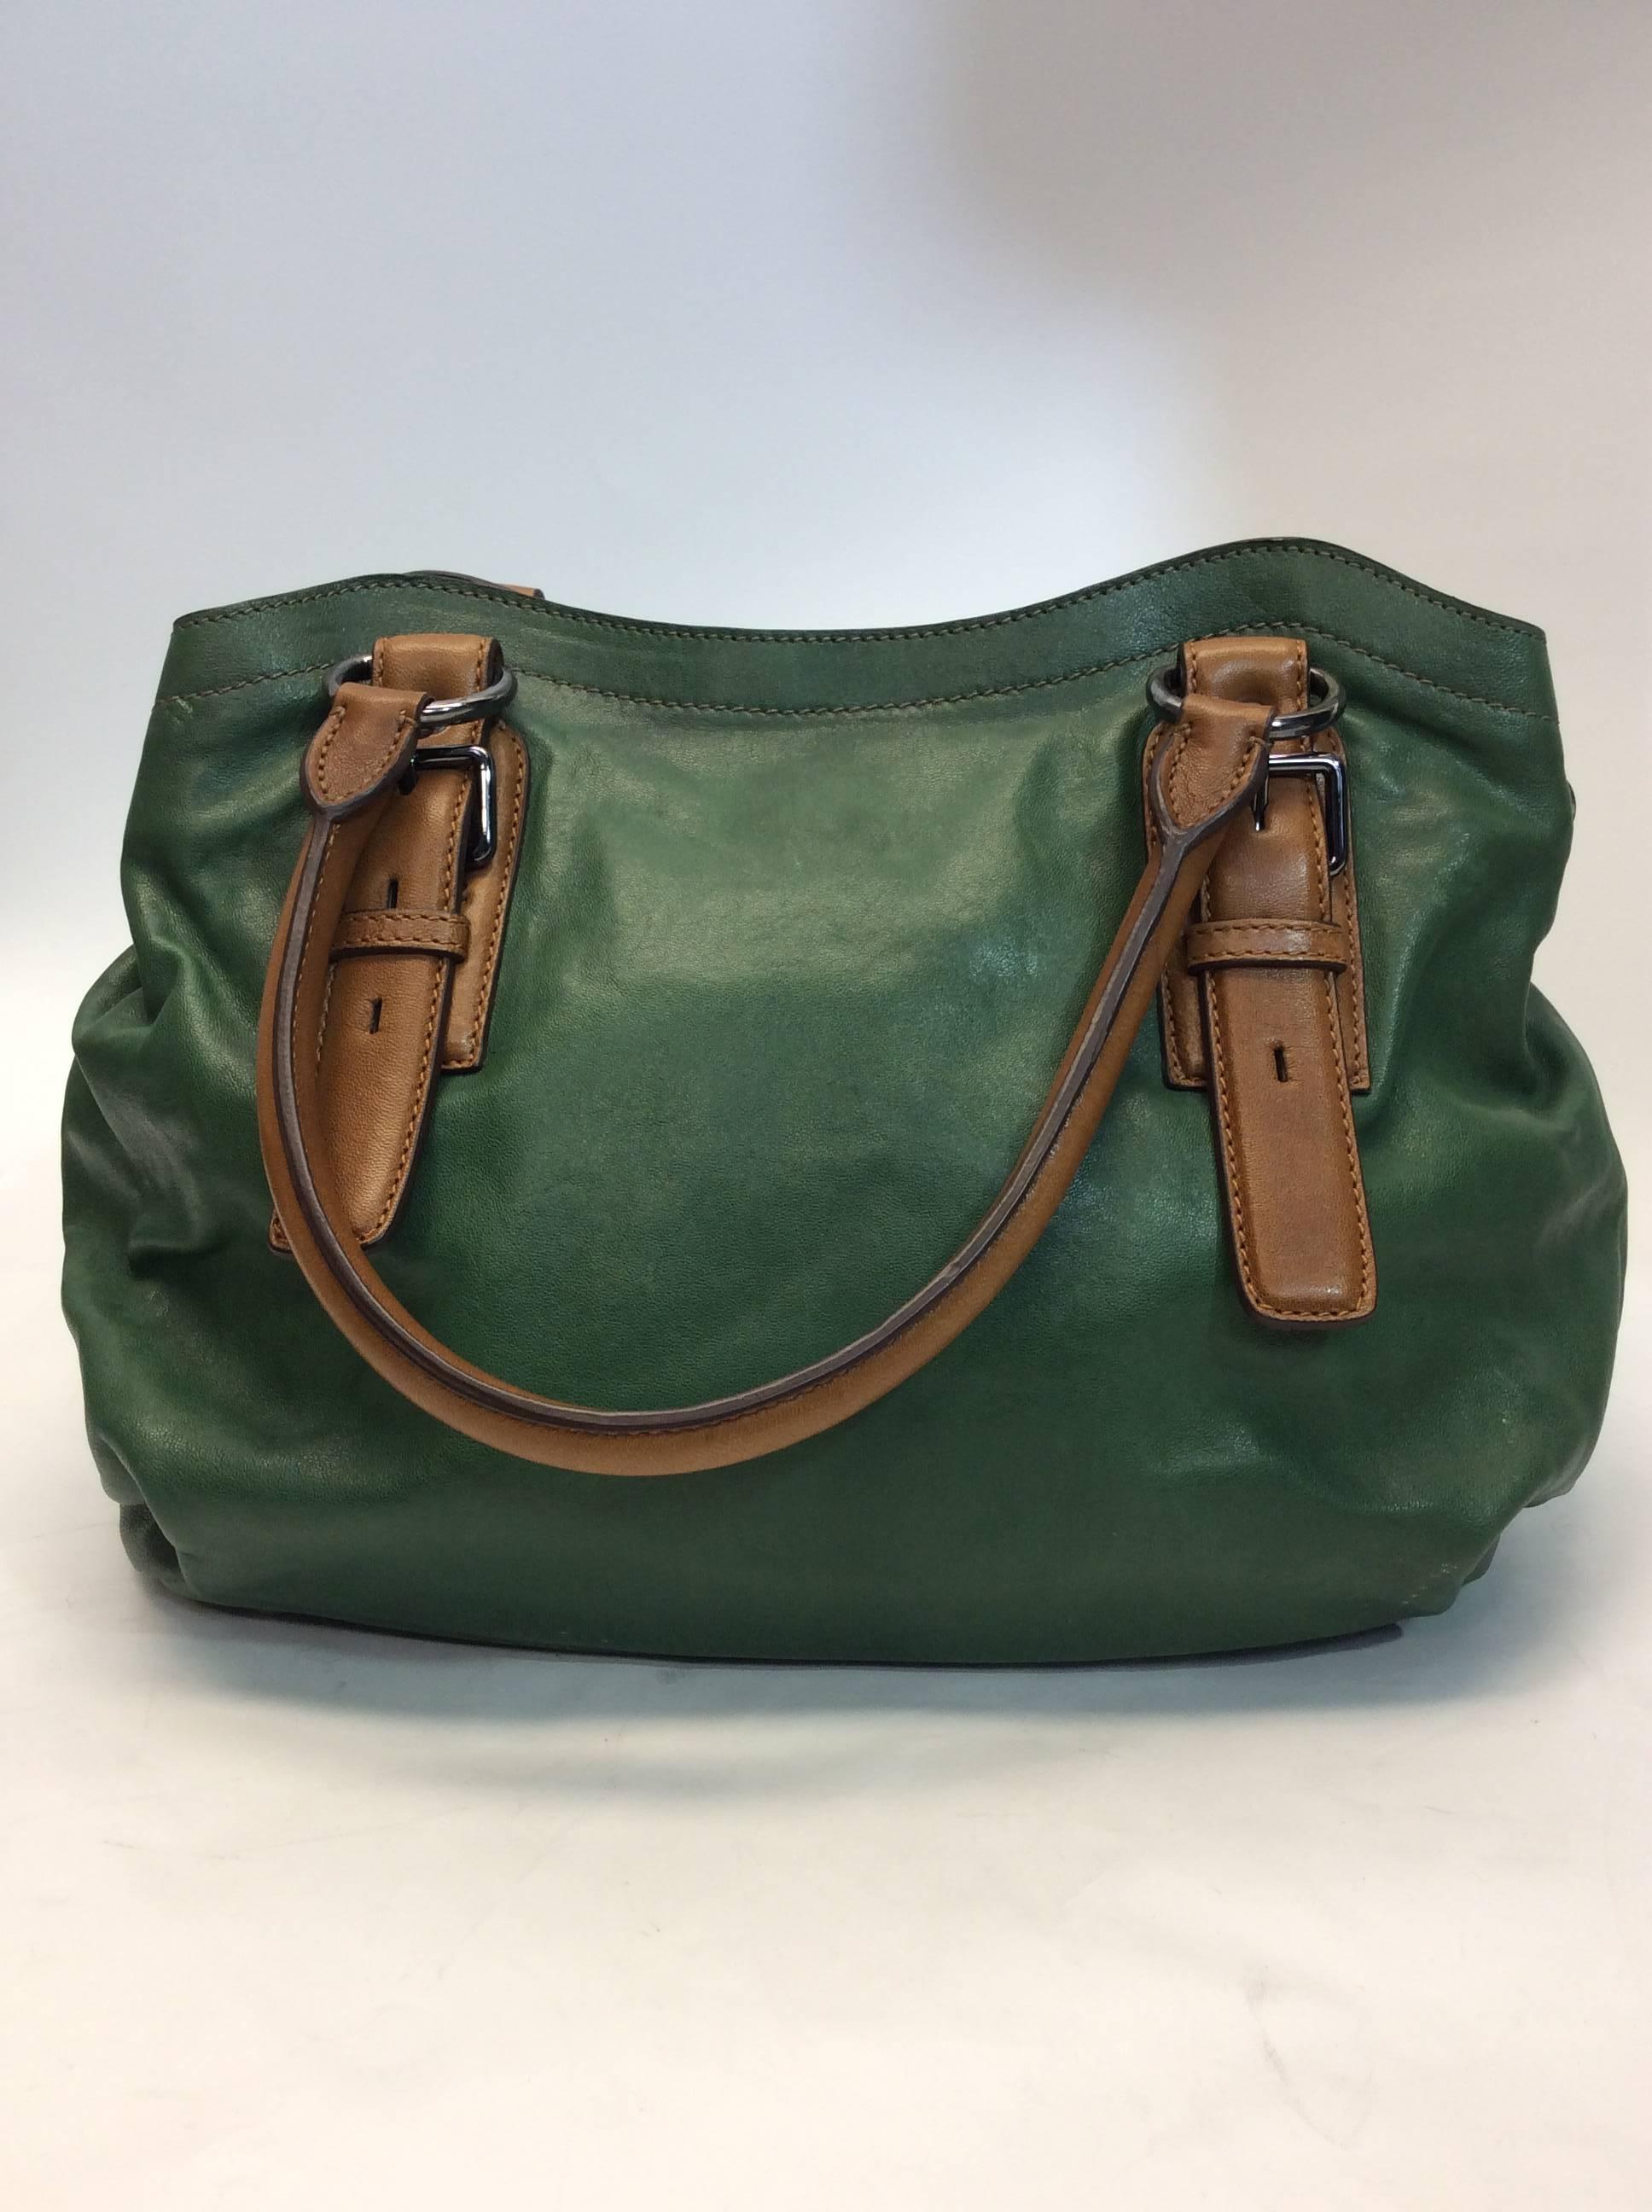 olive green leather handbag